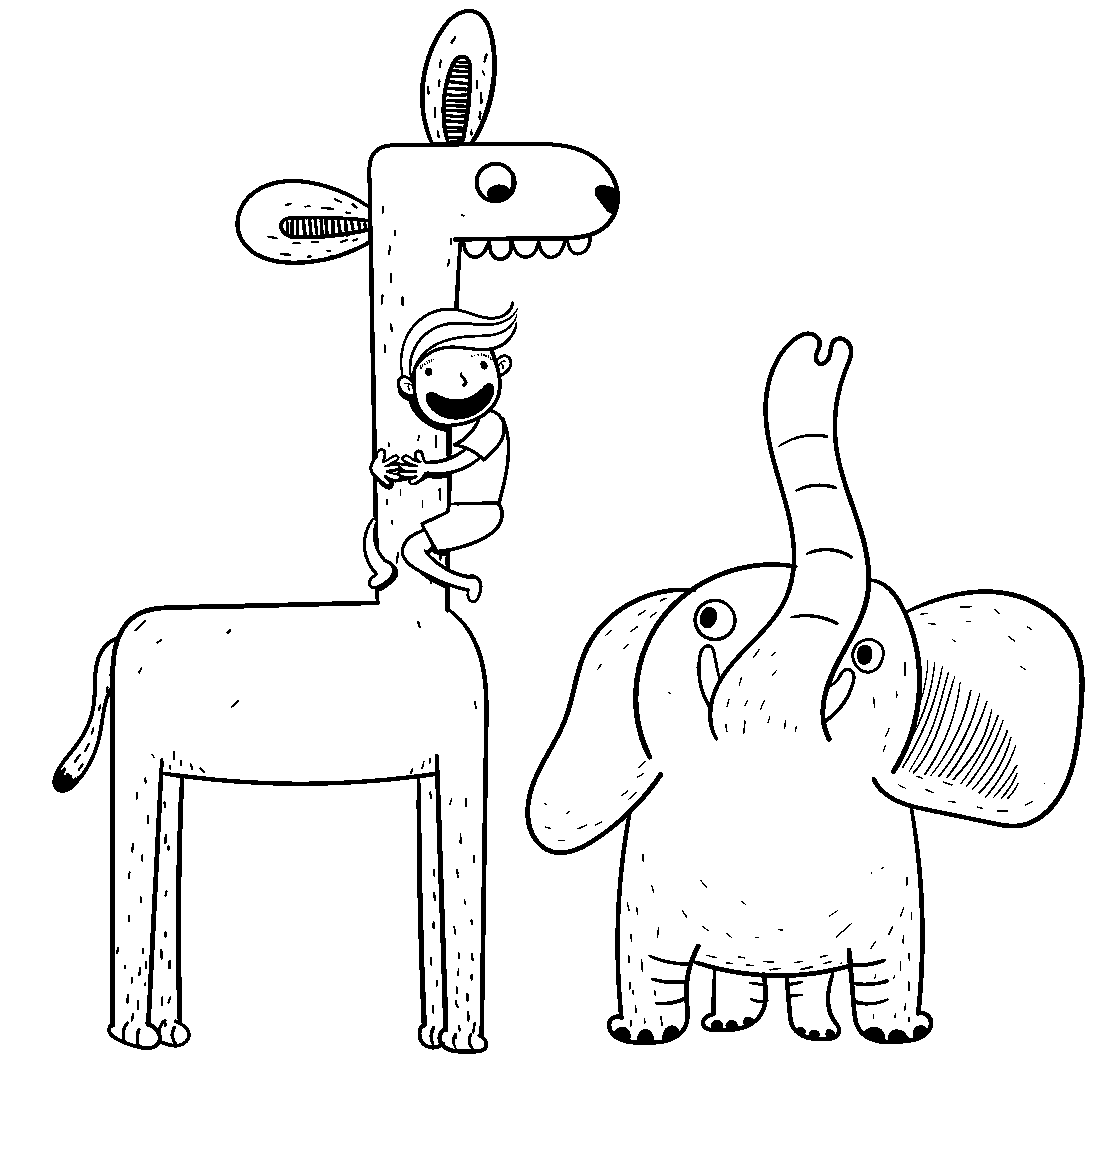 Disegno da colorare di elefante, bambino e giraffa stile illustrazione per bambini